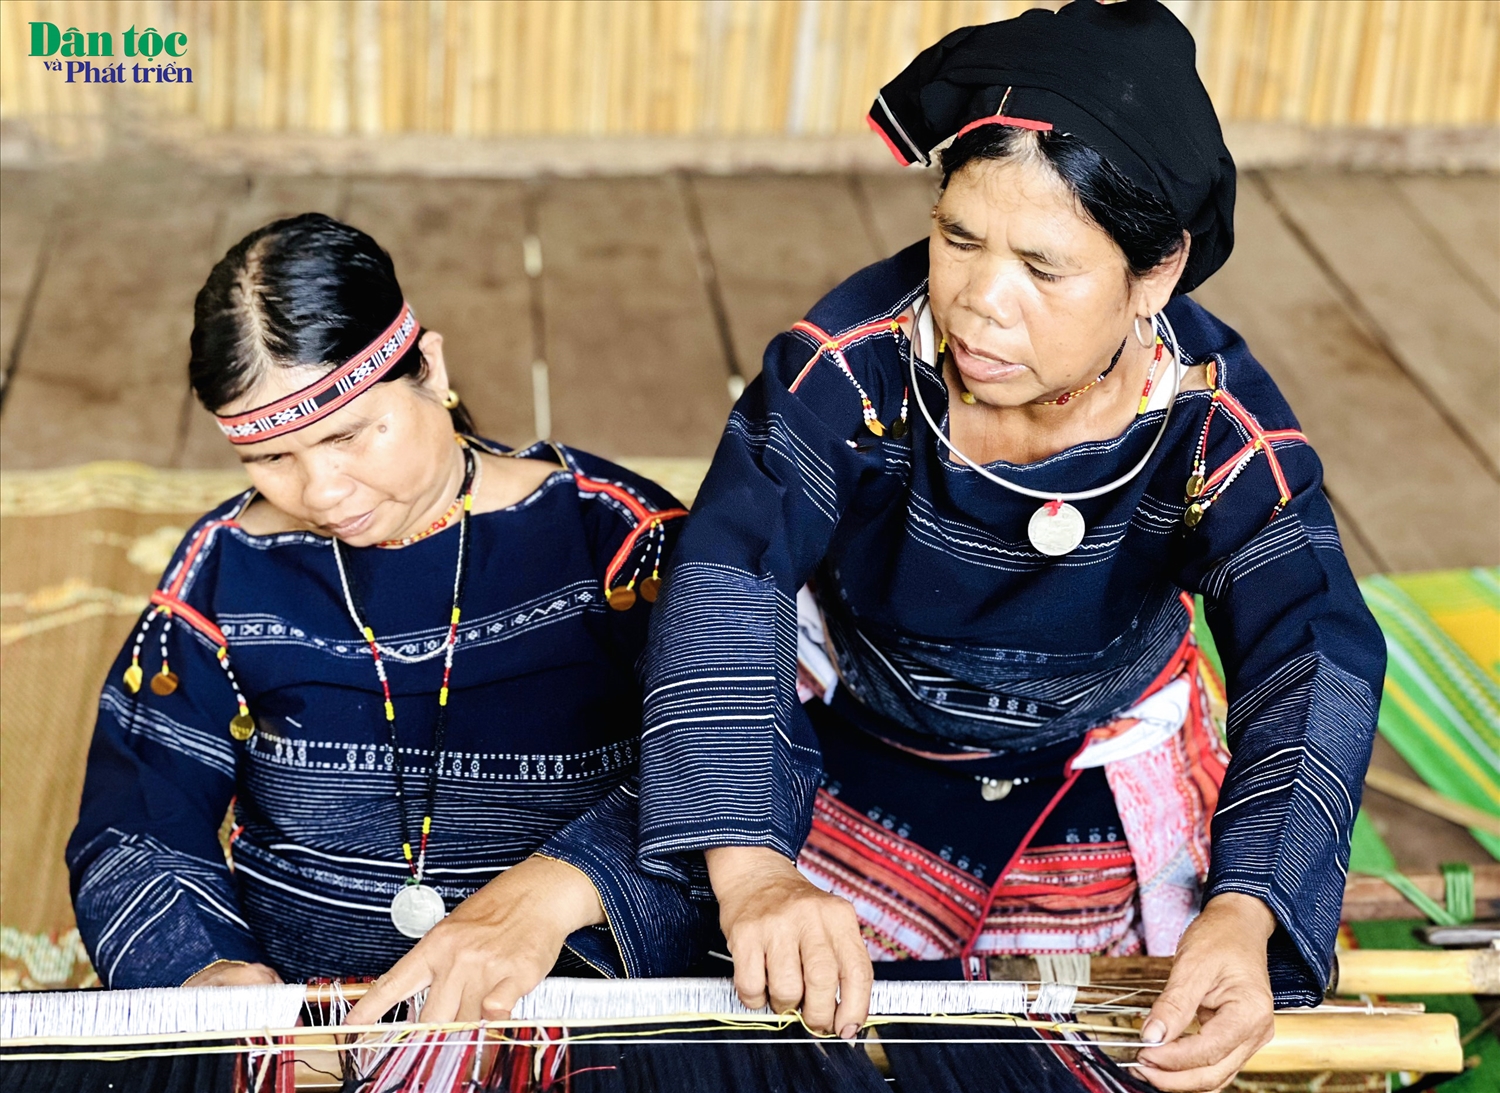 Nghệ nhân Ưu tú Đinh Thị Lăm (bên phải) là một trong những hạt nhân văn hóa tiêu biểu trong việc giữ gìn văn hóa truyền thống